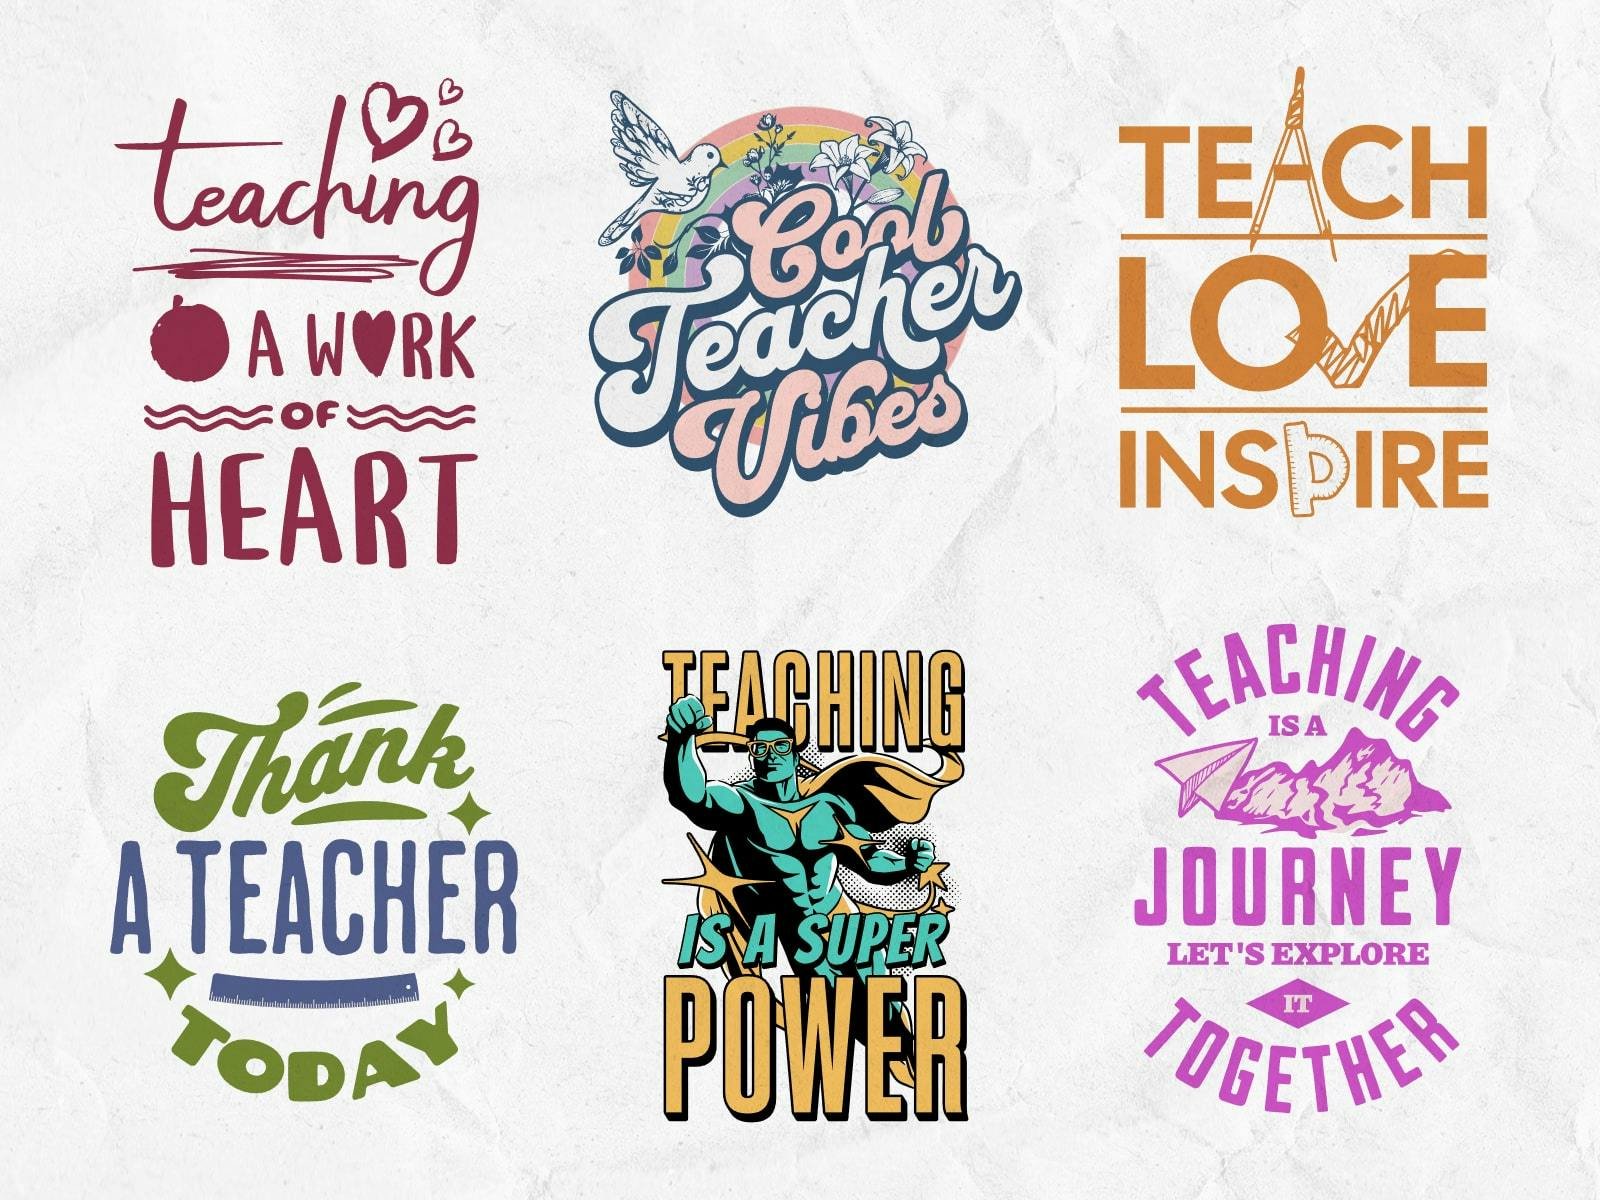 Creative and fun Teacher’s Day t-shirt designs